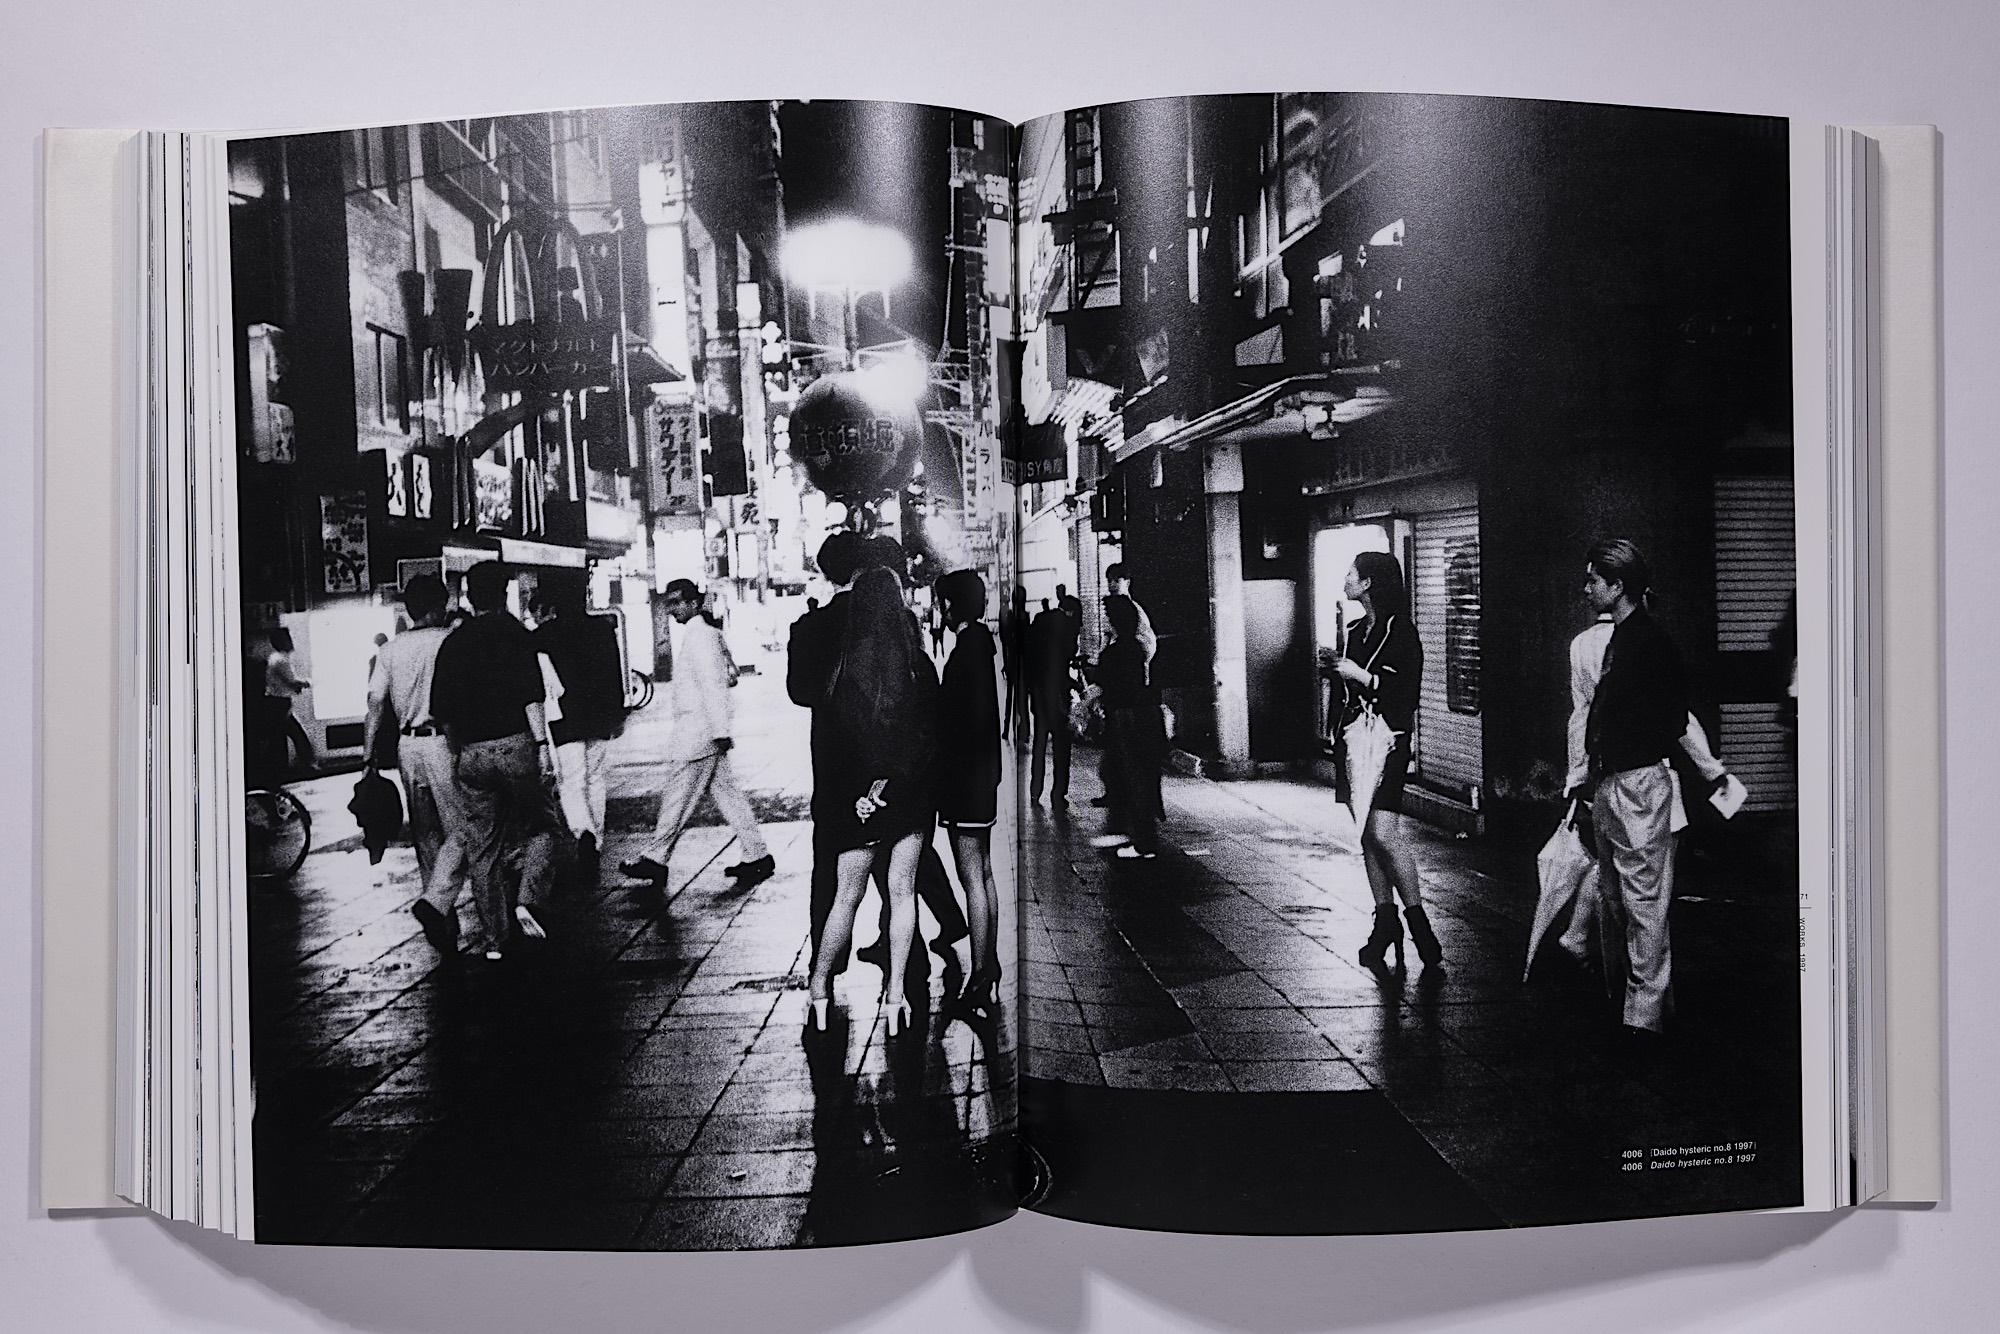 Daido Moriyama - The Complete Works of Daido Moriyama Image 38